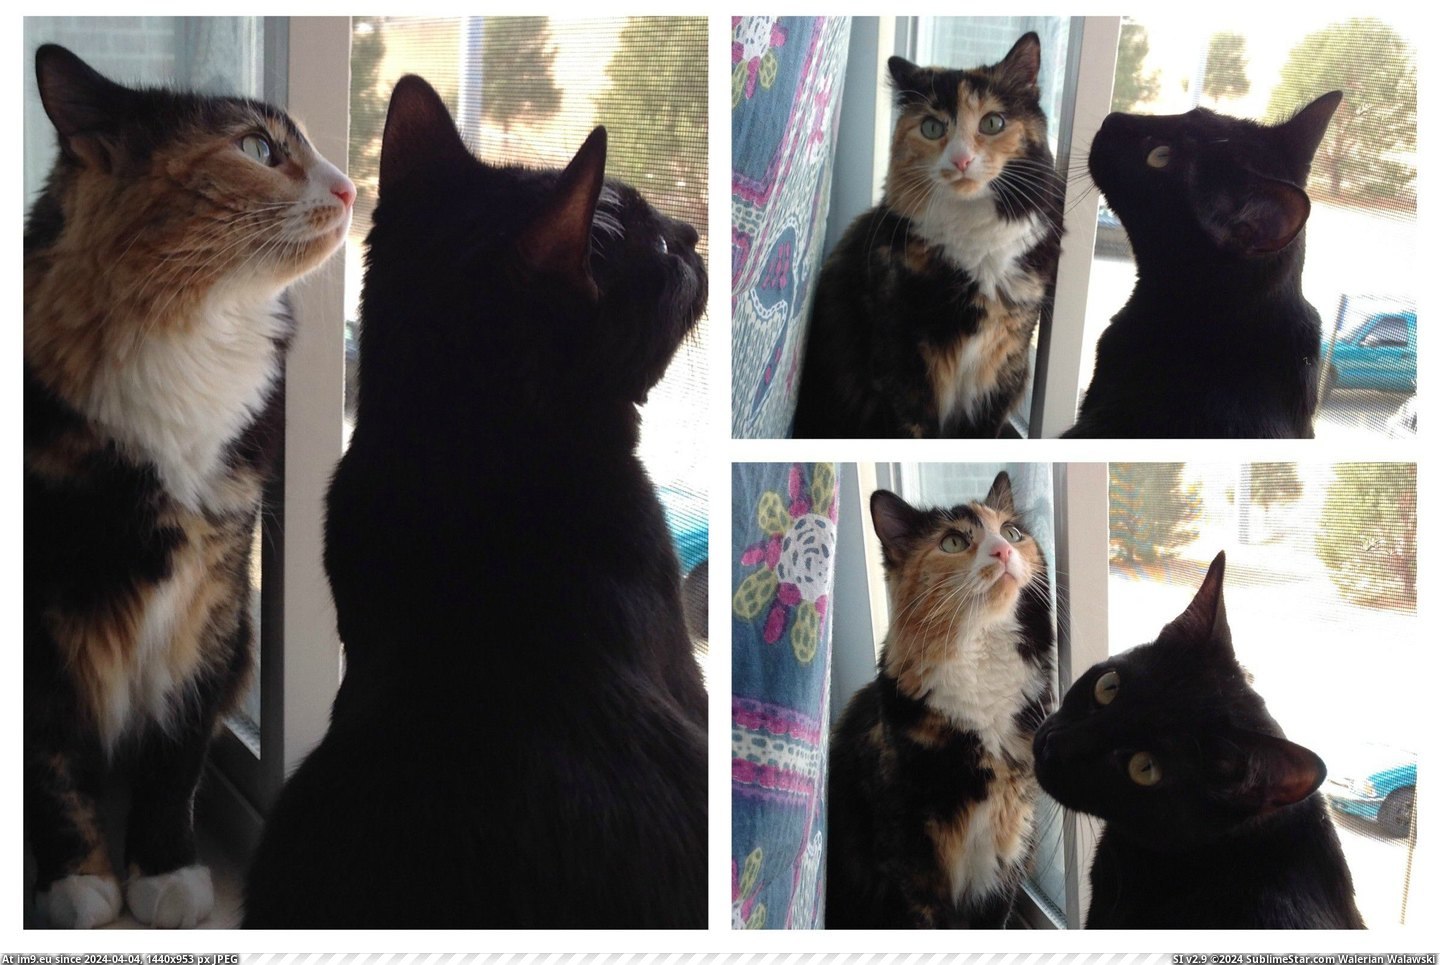 #Cats #Kitties #Springtime #Pretty [Cats] Pretty kitties, springtime kitties Pic. (Obraz z album My r/CATS favs))